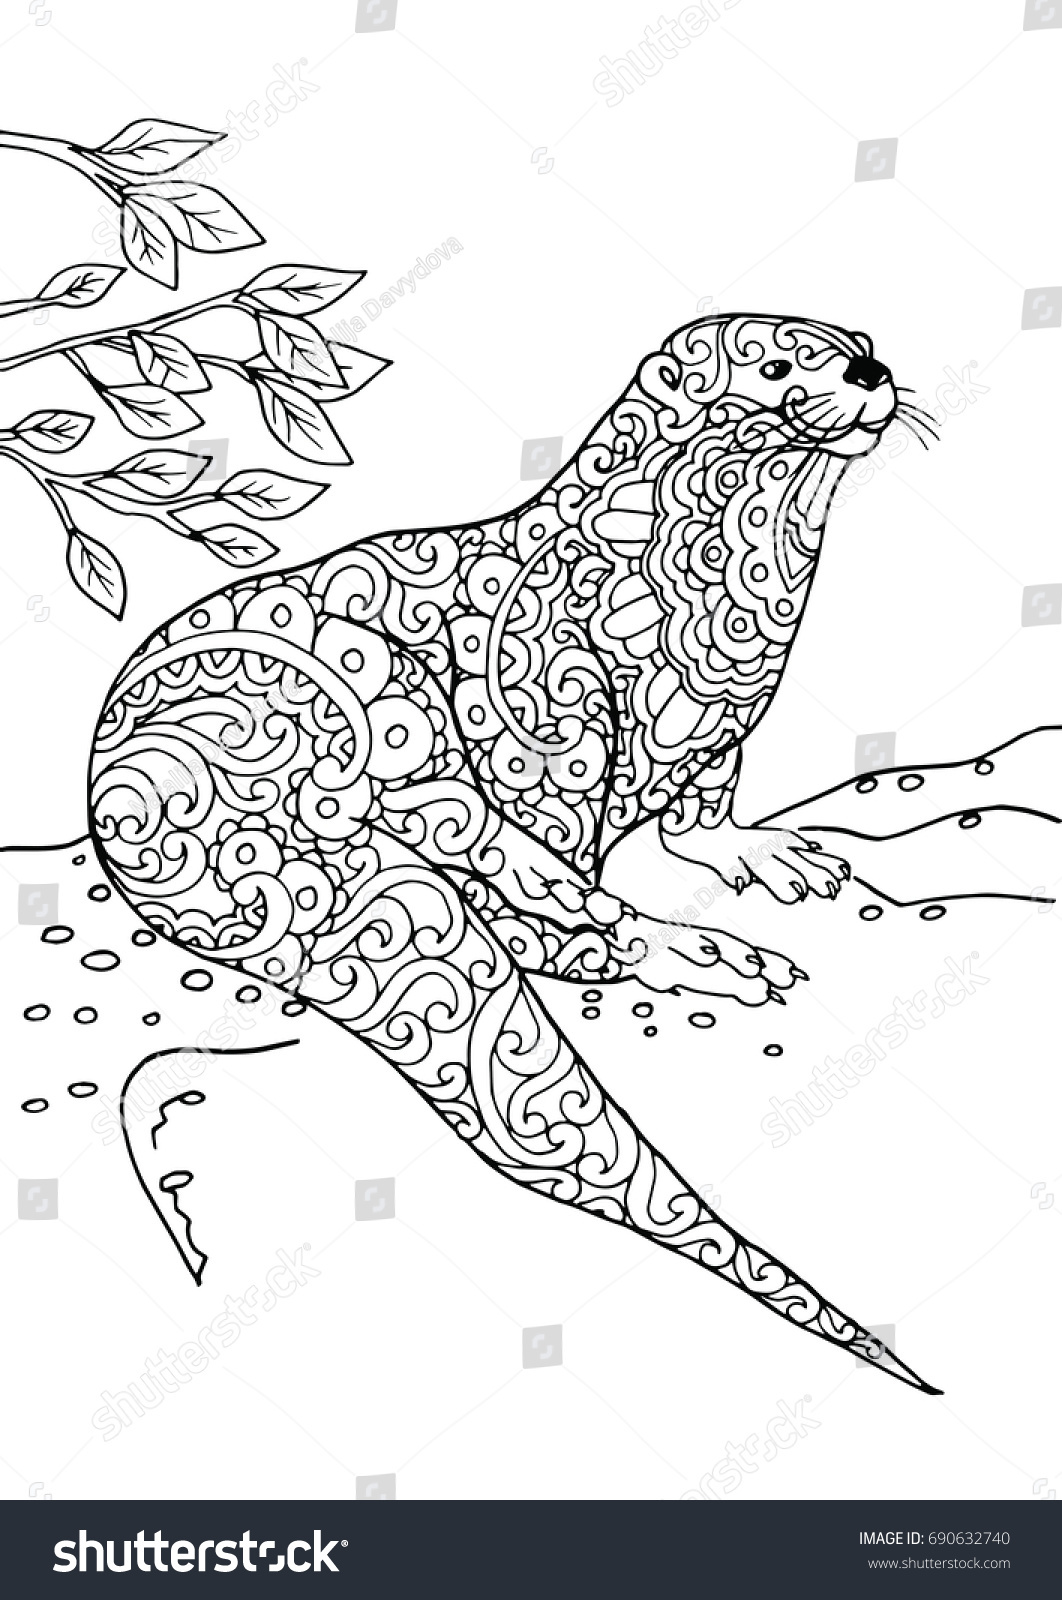 Download Zentangle Doodle Patterned Fantasy Otter Design Stock ...